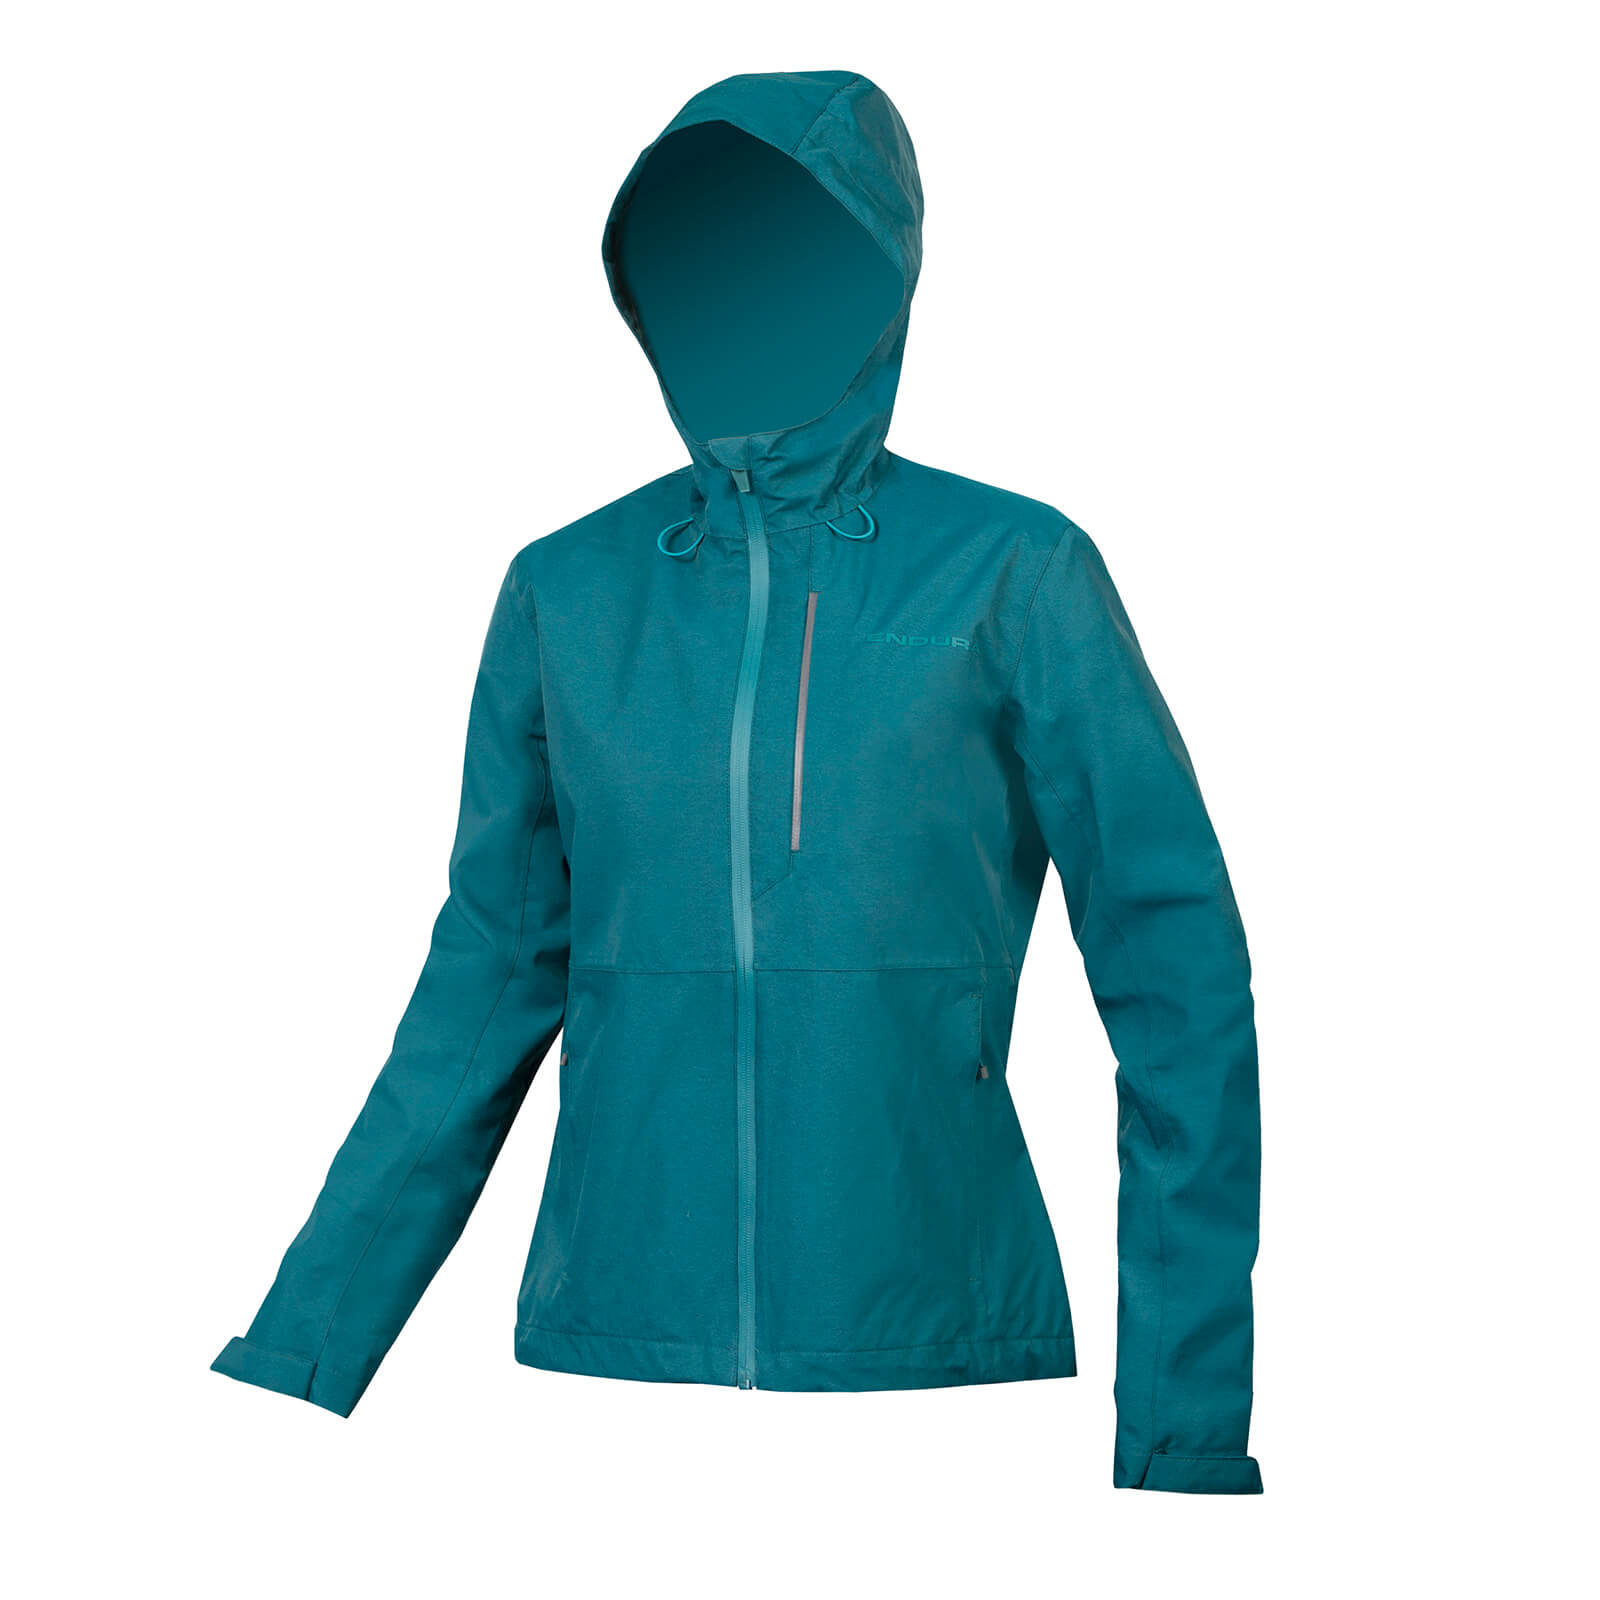 Womens Hummvee Waterproof Hooded Jacket - Deep Teal